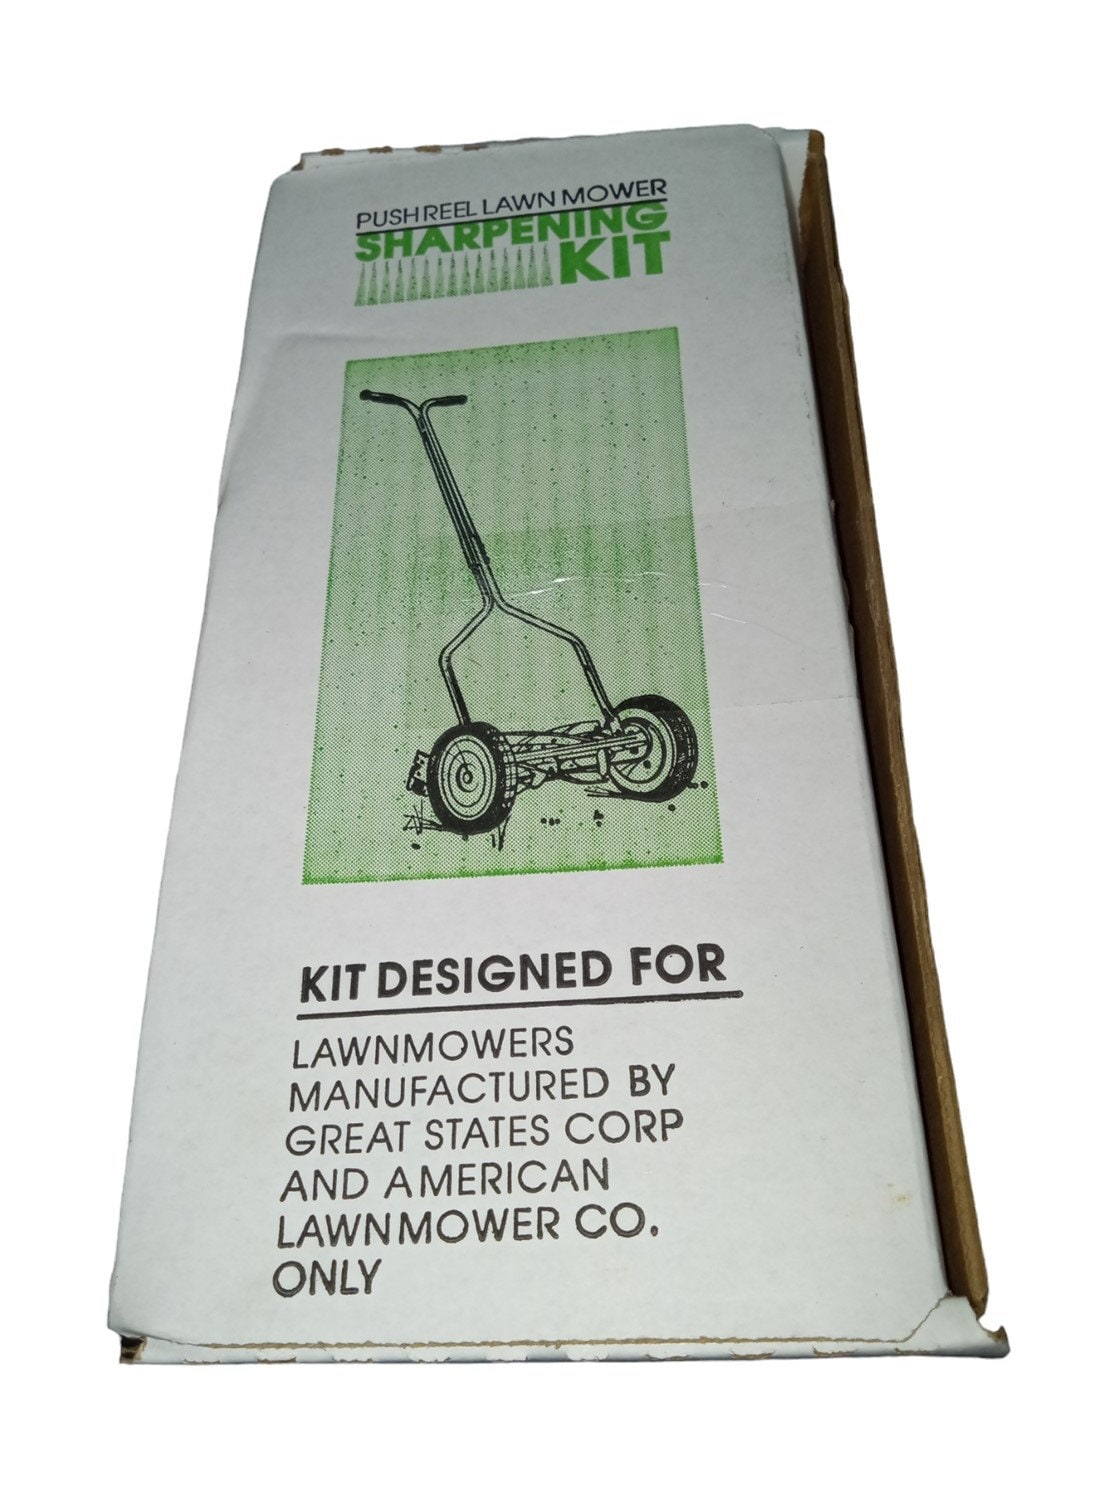 Scotts / Great States / American Push Reel Lawn Mower sharpening